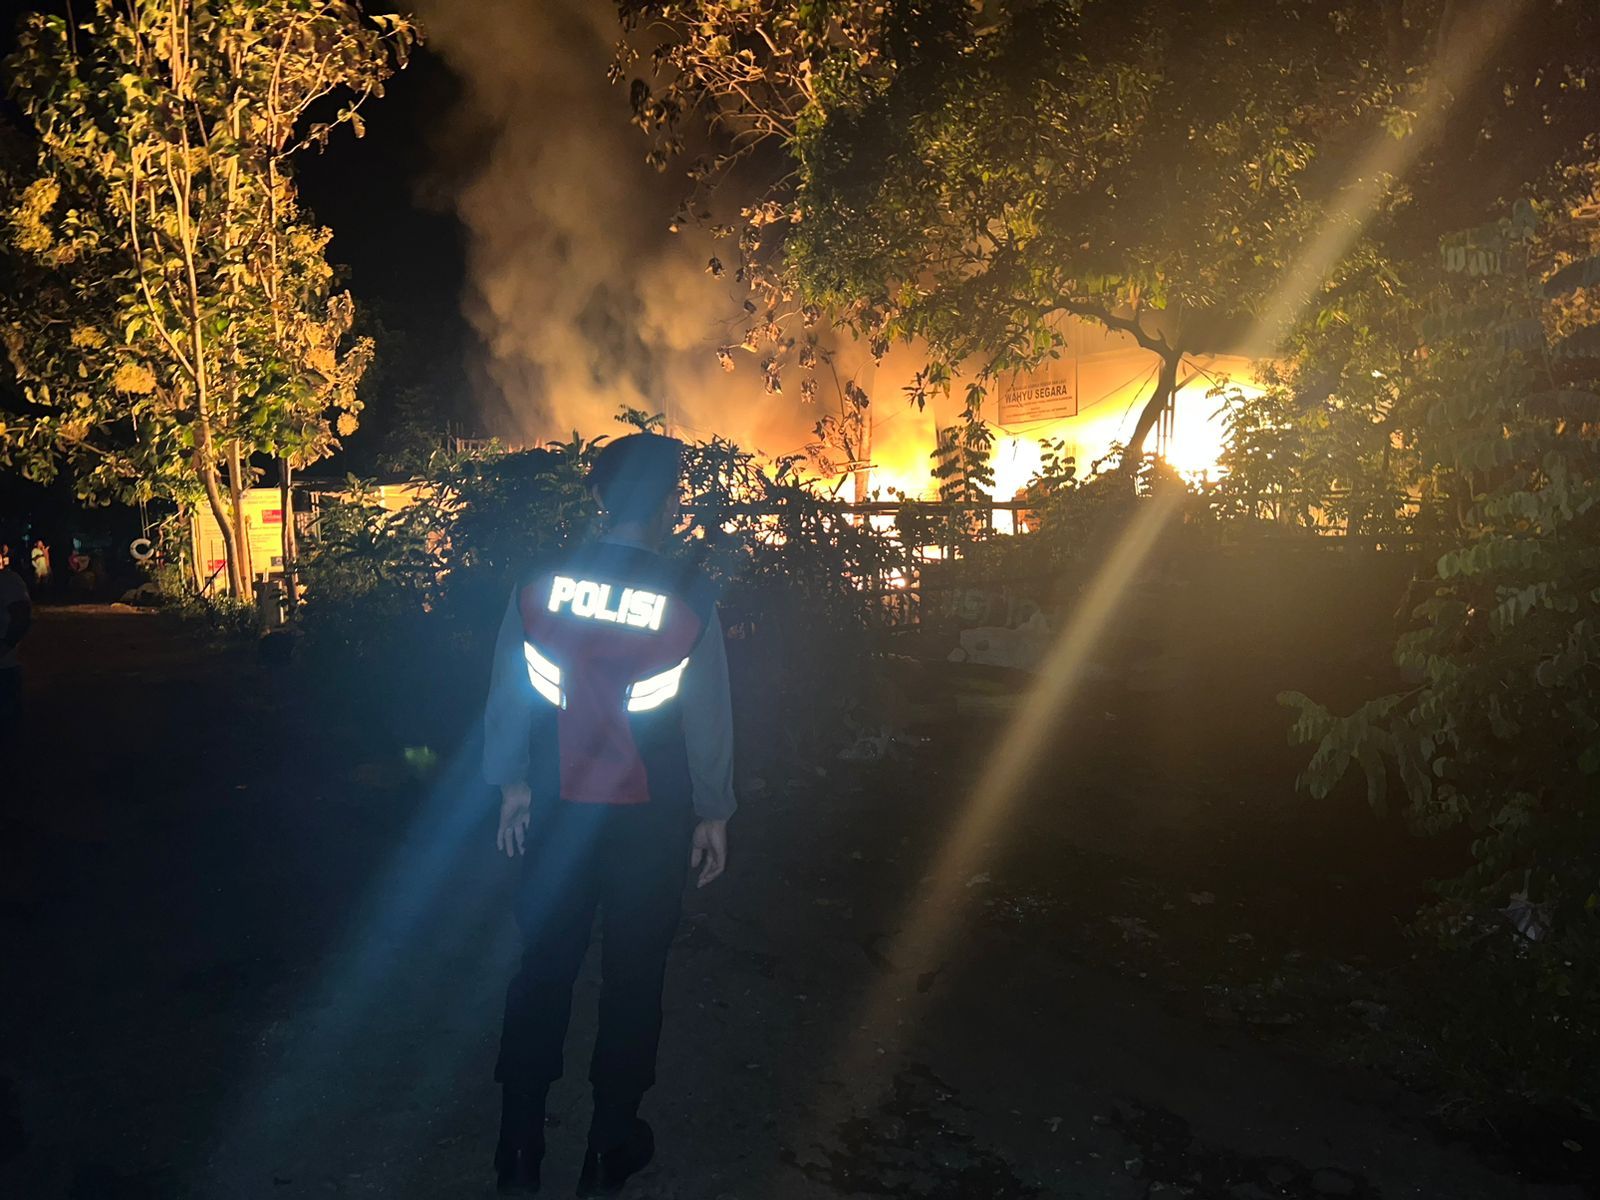 Kebakaran terjadi di TPS Lembongan Recycle Wahyu Segara, Desa Lembongan, Nusa Penida, Klungkung. Simak informasi lengkapnya